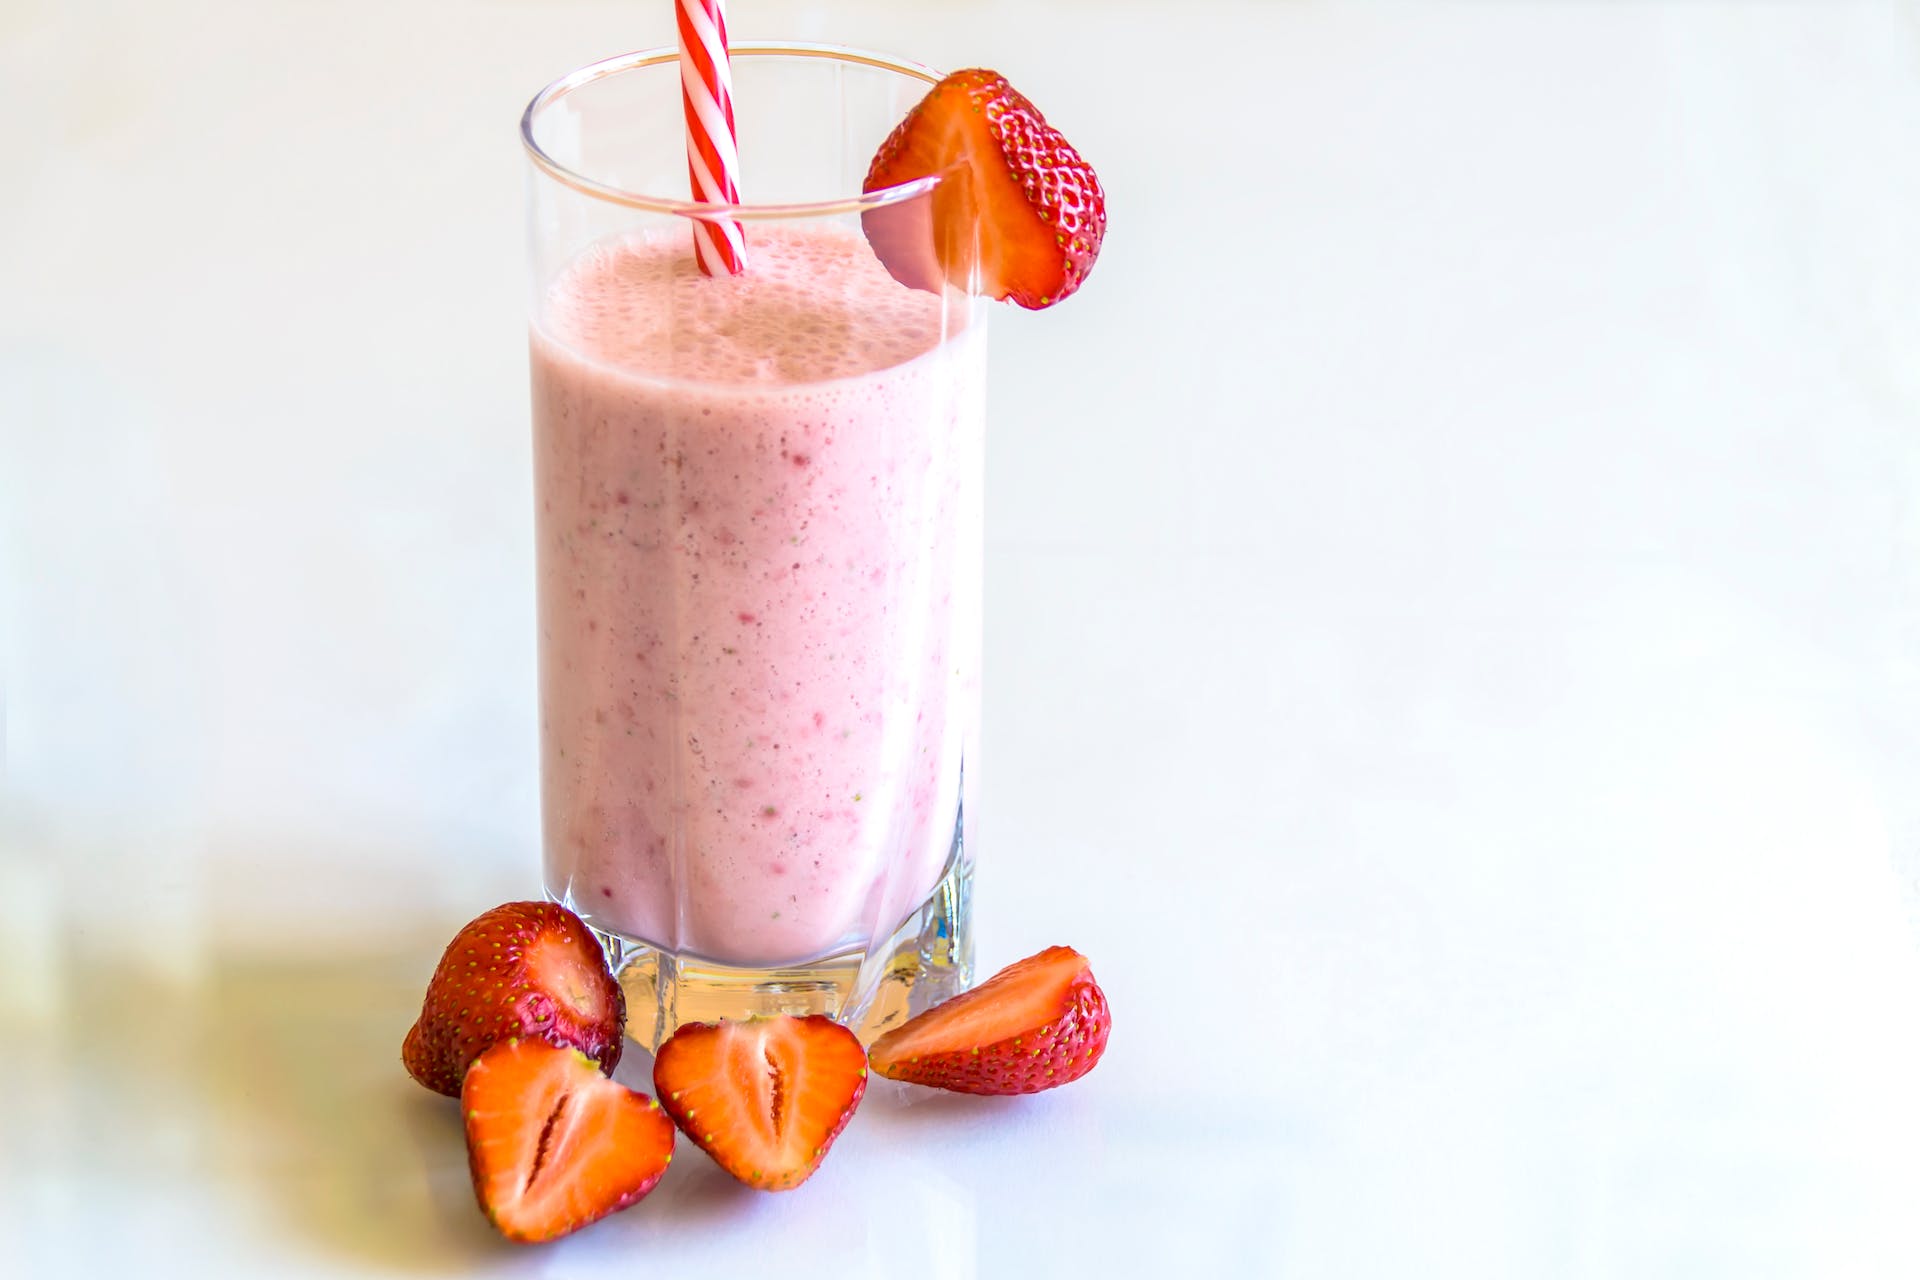 Milkshake à la fraise | Source : Pexels